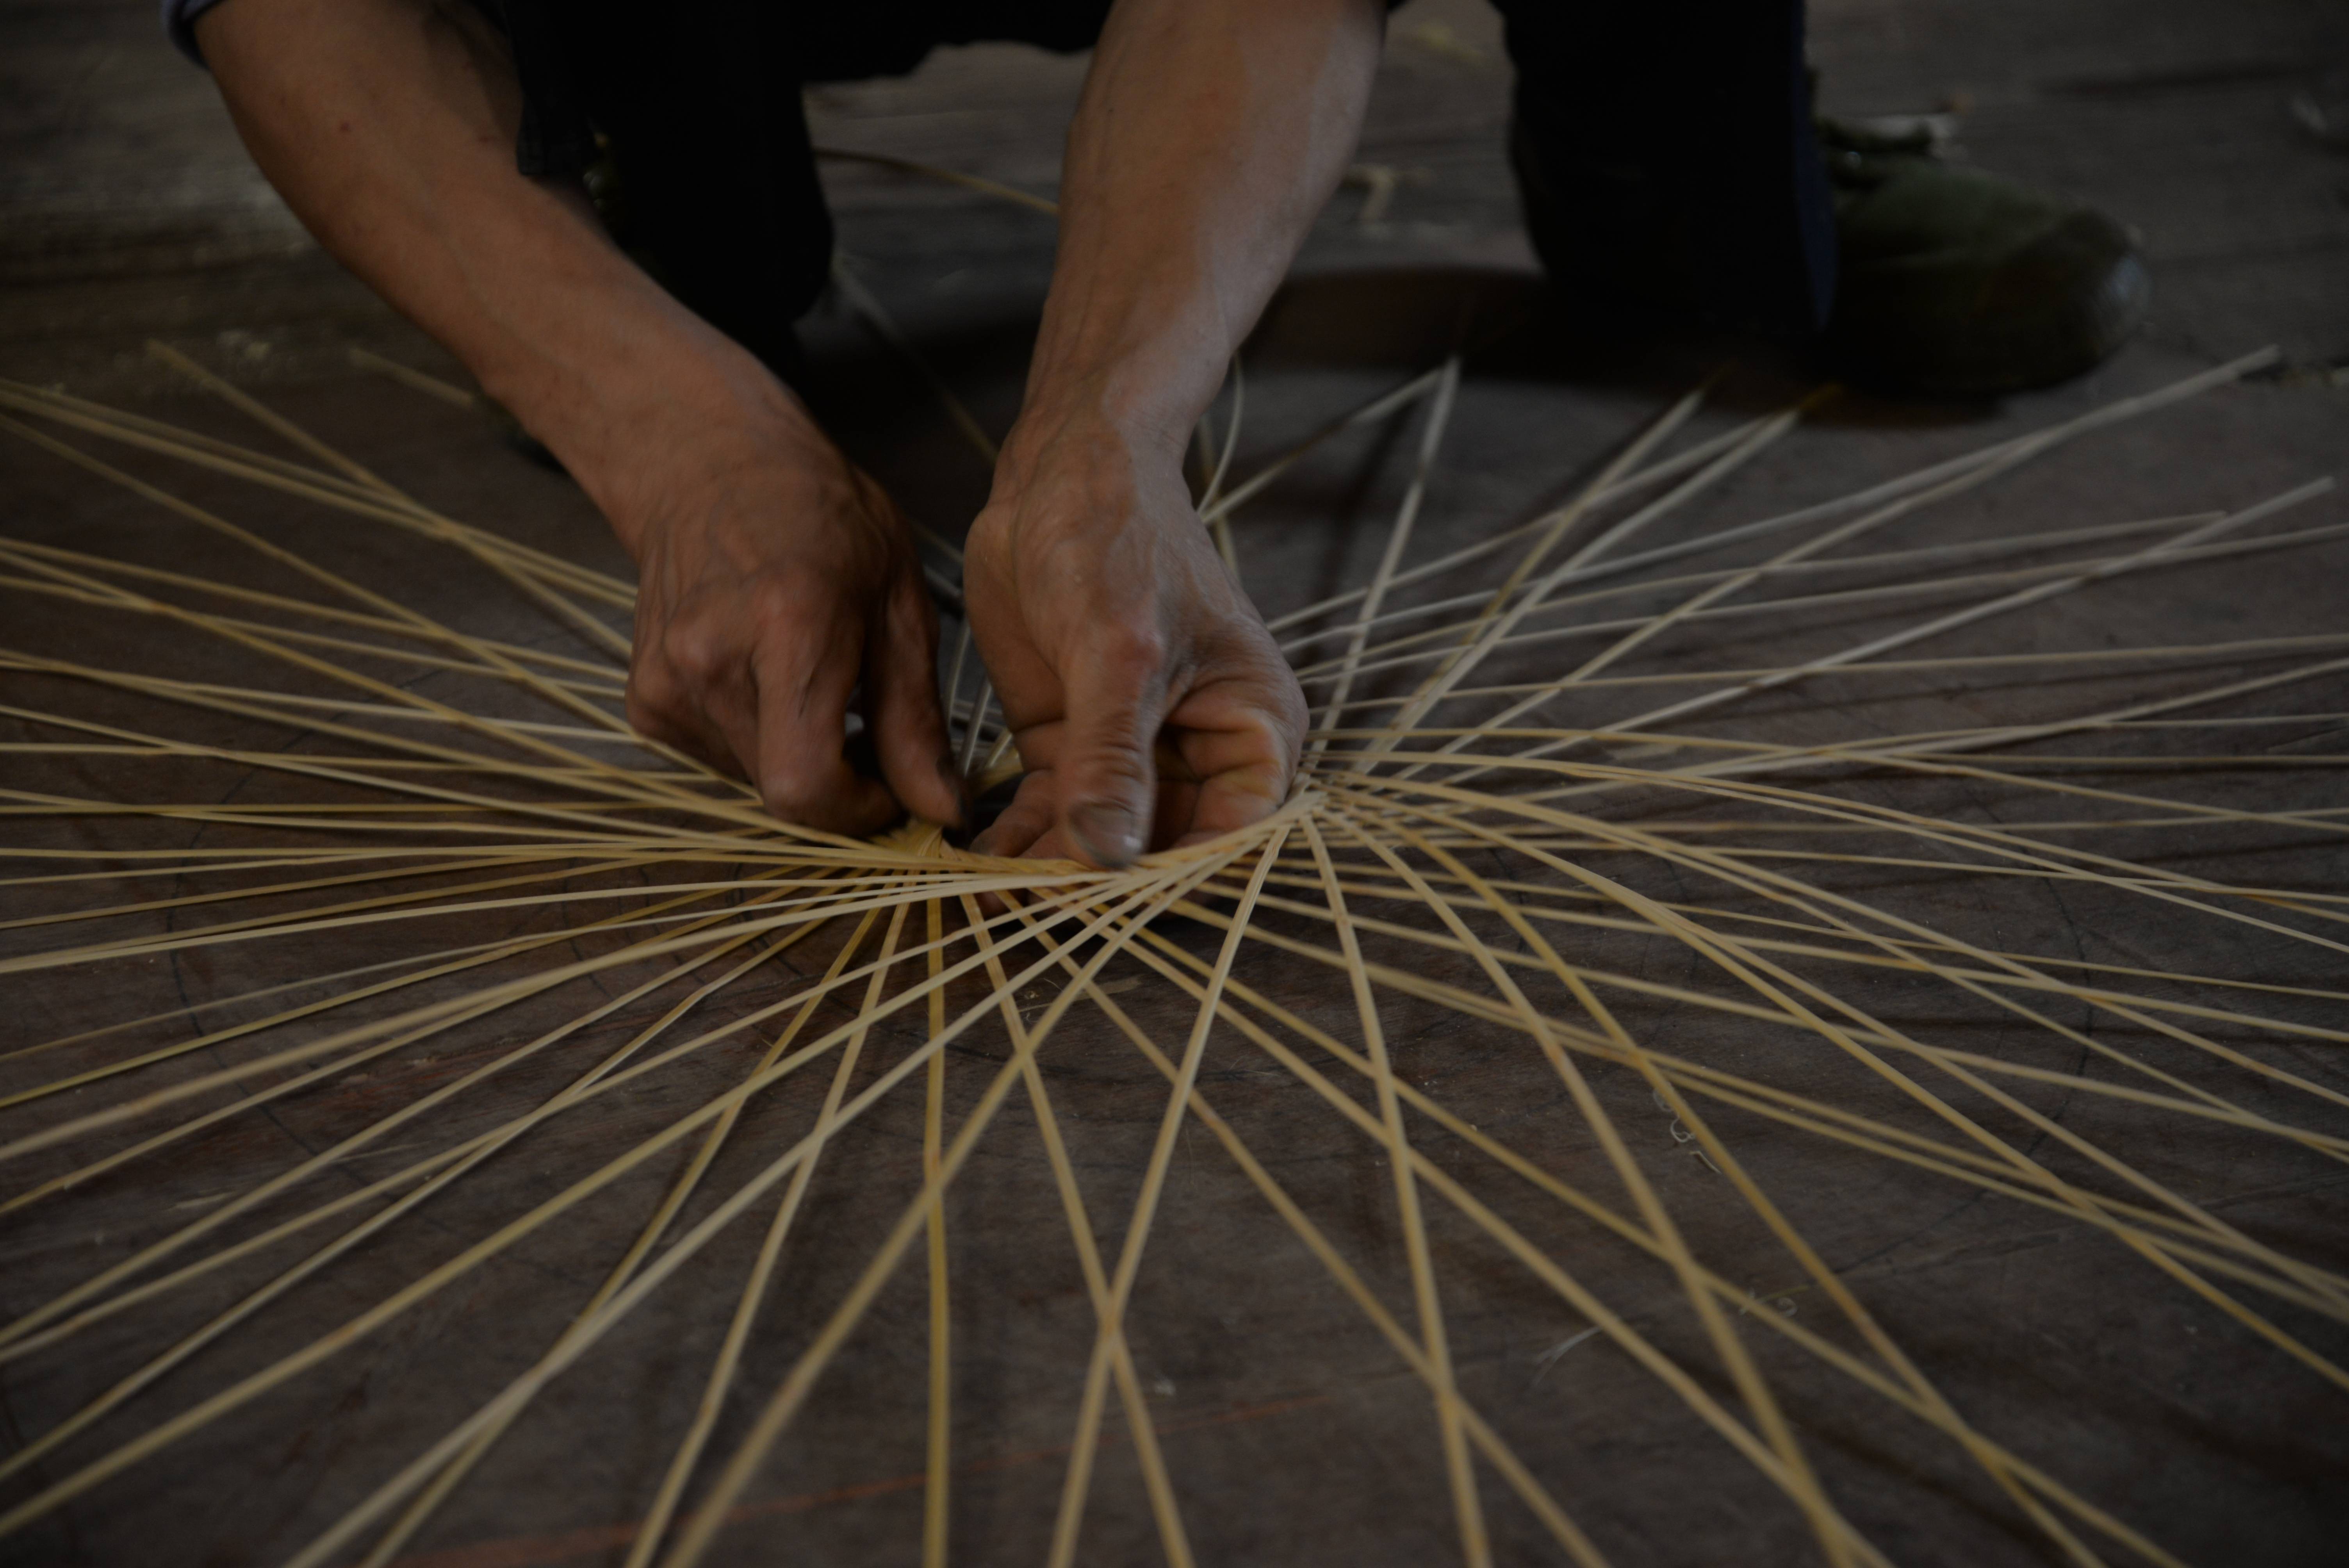 篁岭的竹编手艺人,将希望,阳光编织进了竹工艺品